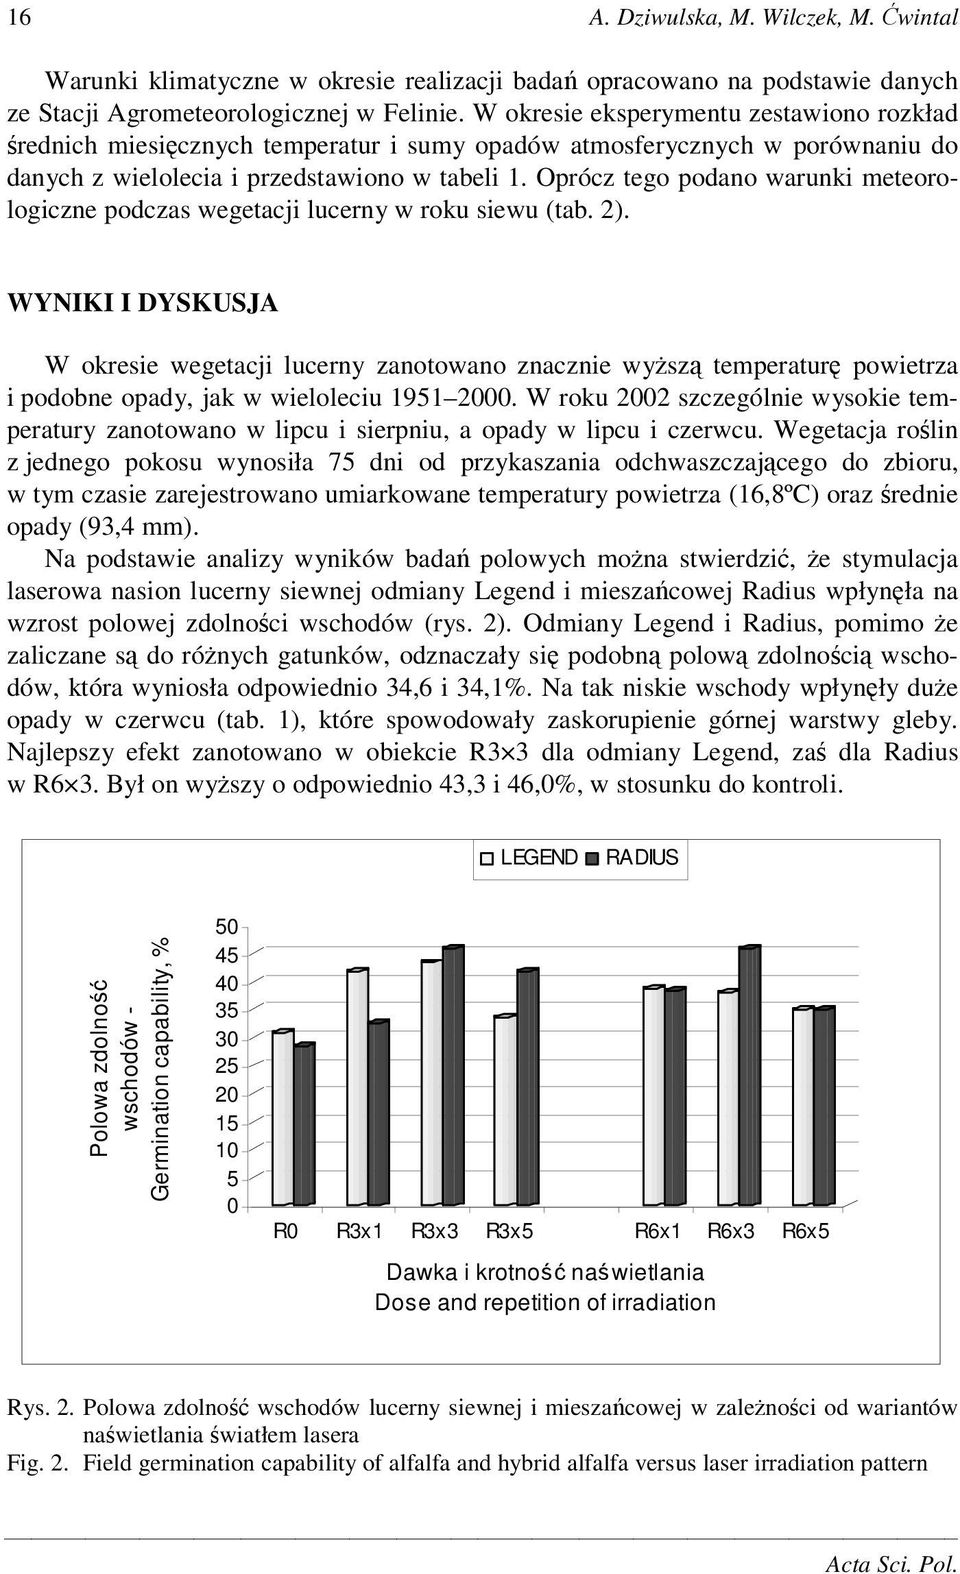 Oprócz tego podano warunki meteorologiczne podczas wegetacji lucerny w roku siewu (tab. 2).